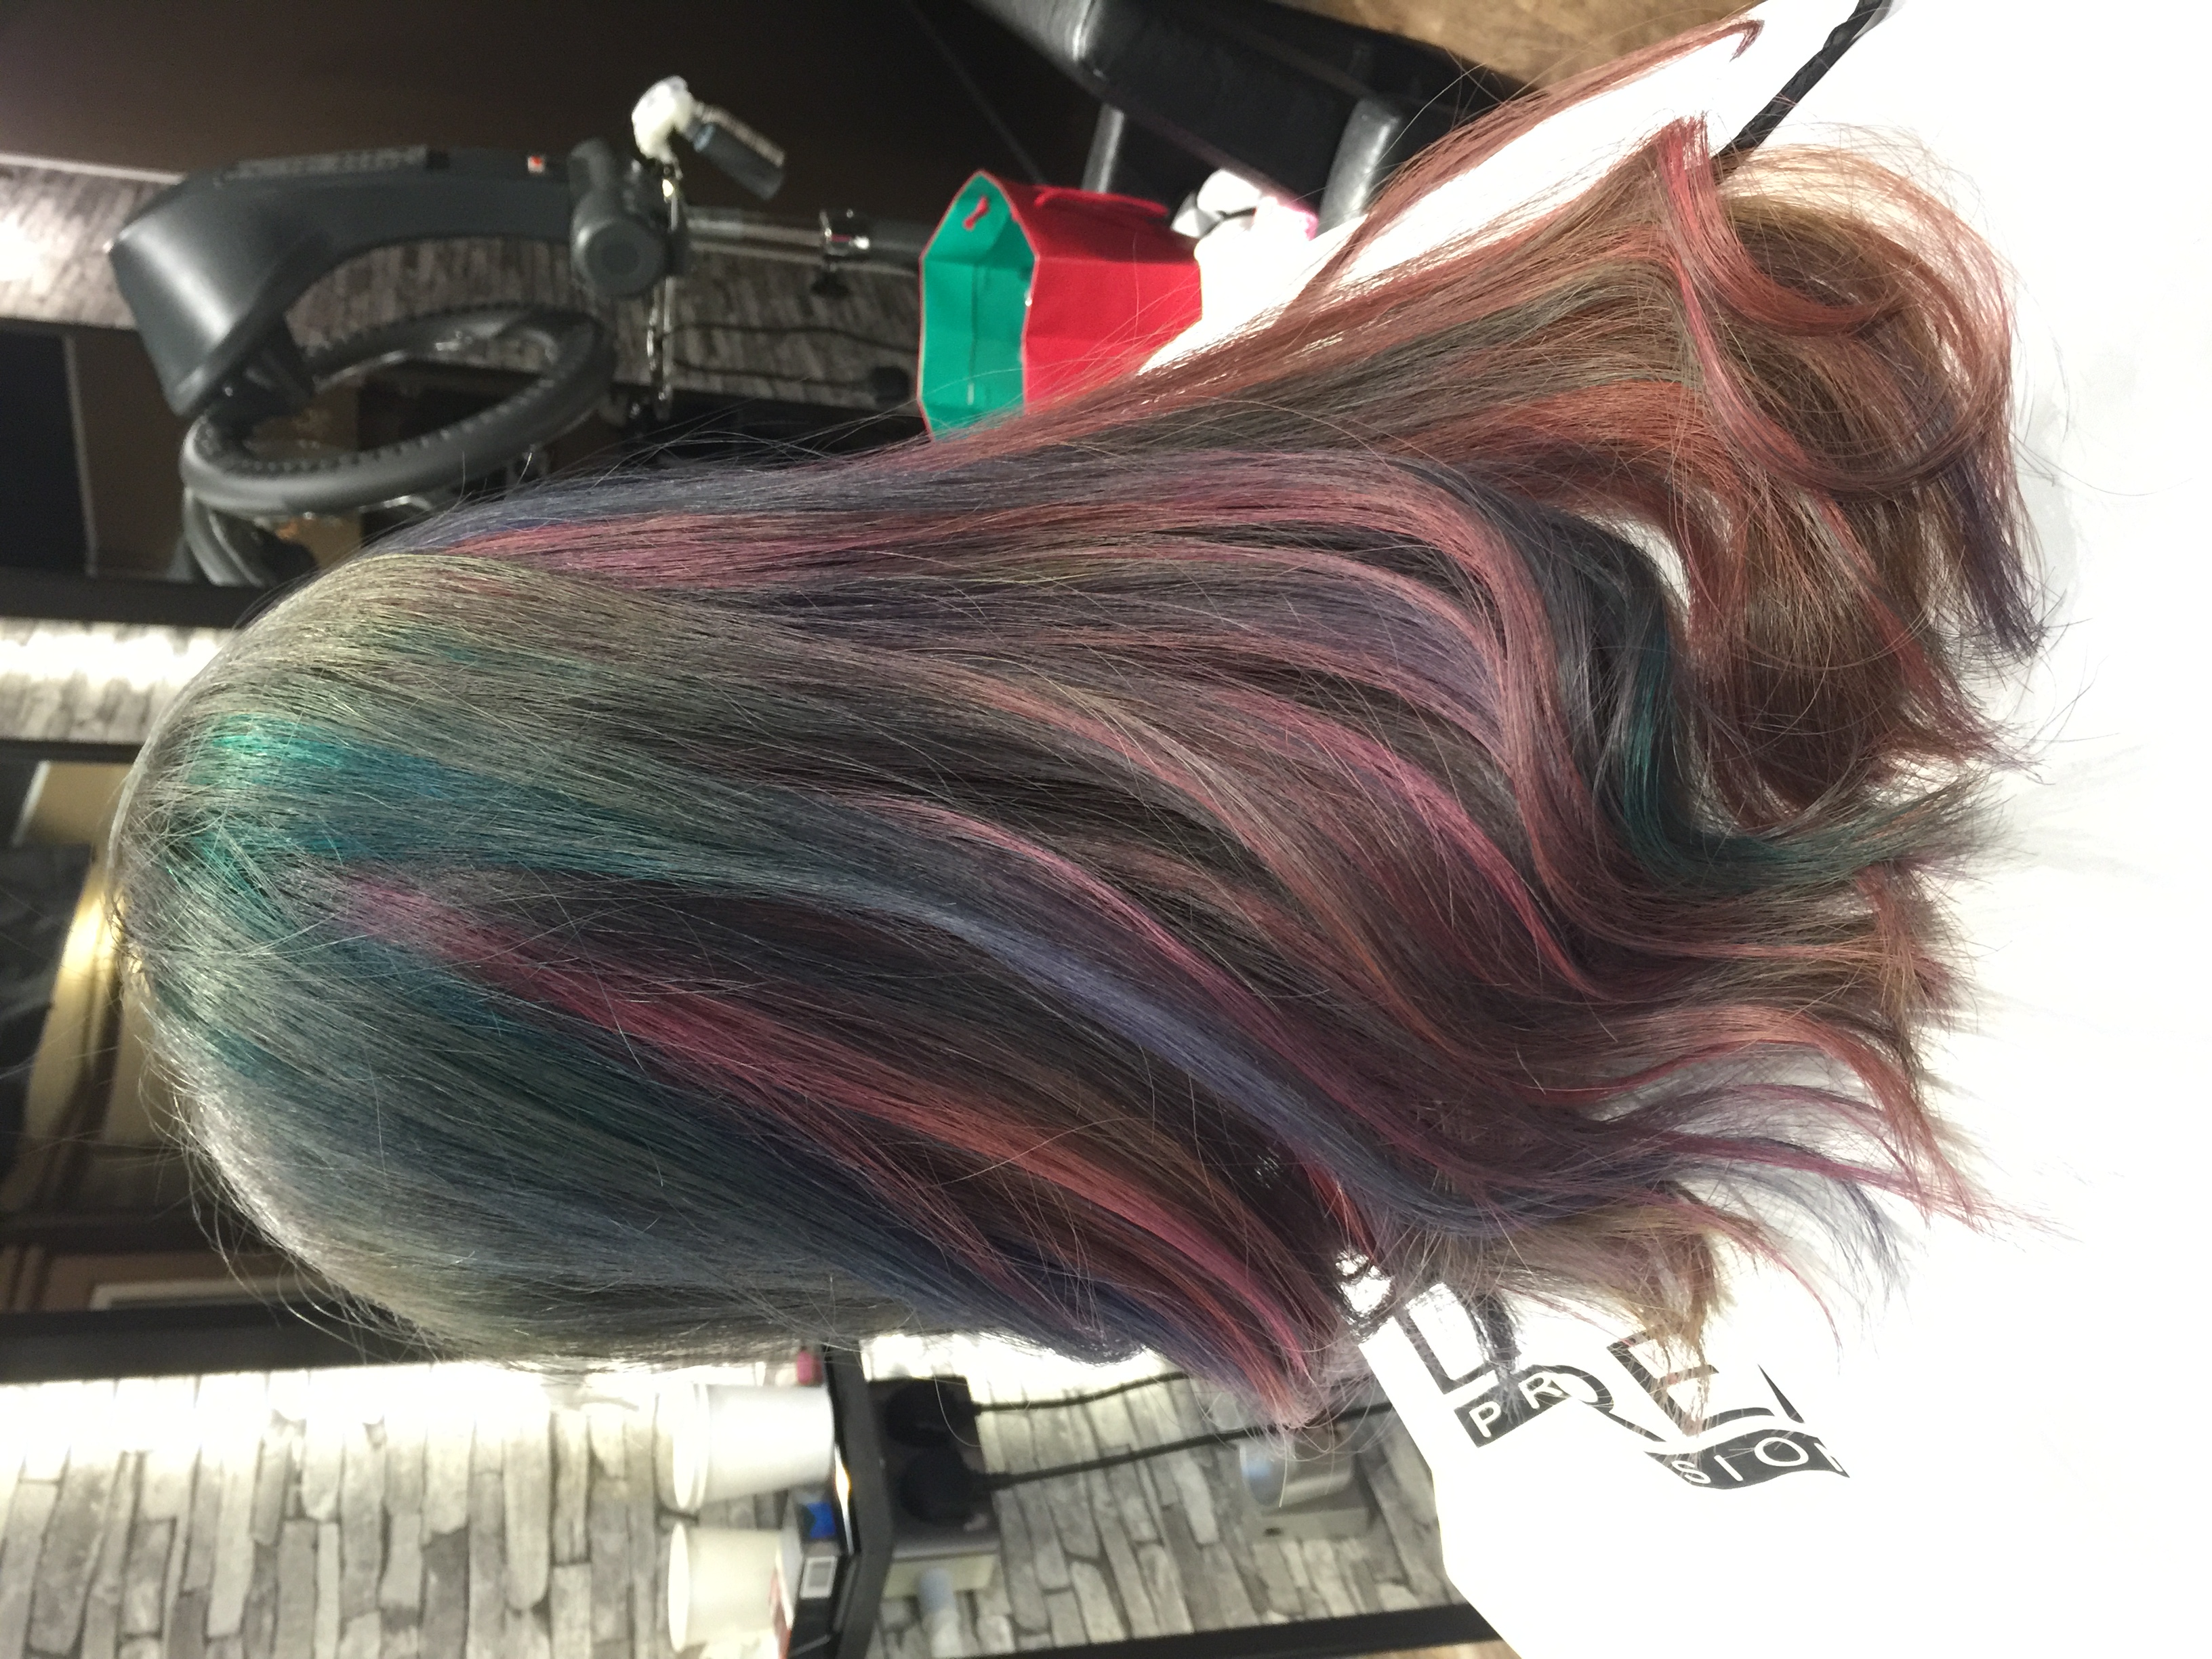 髮型作品參考:彩虹粉色系